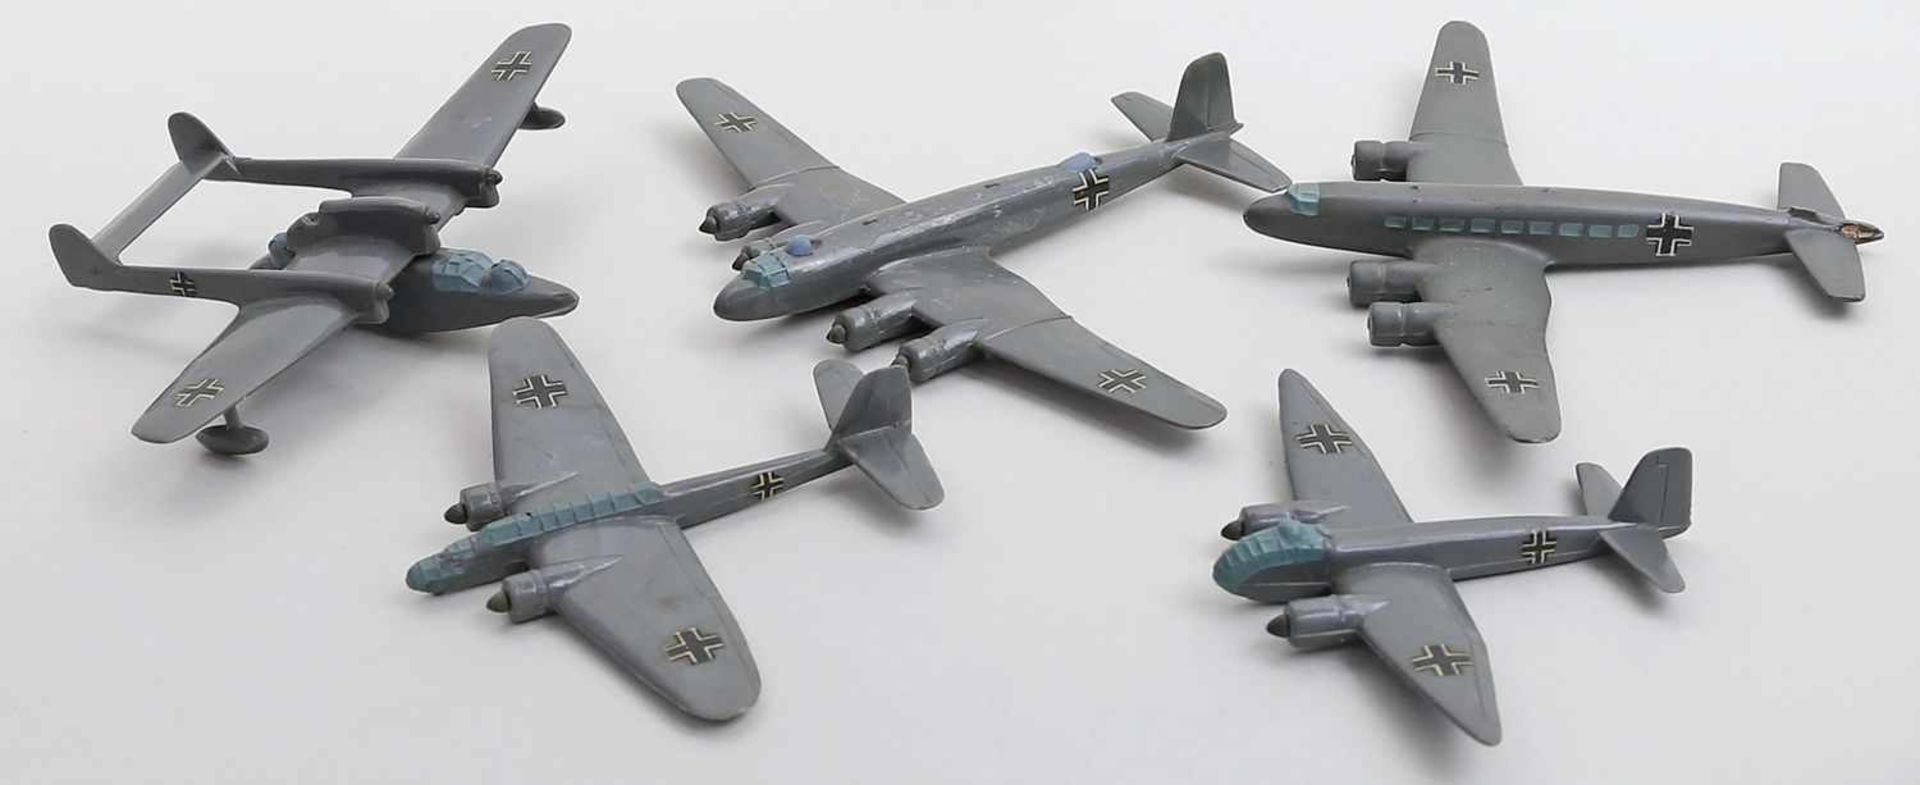 5 Flugzeuge, Wiking.Nr. FW 200C/+200/BV 138/Ju 188 und ME 115. Unvollständig. 1940er Jahre.